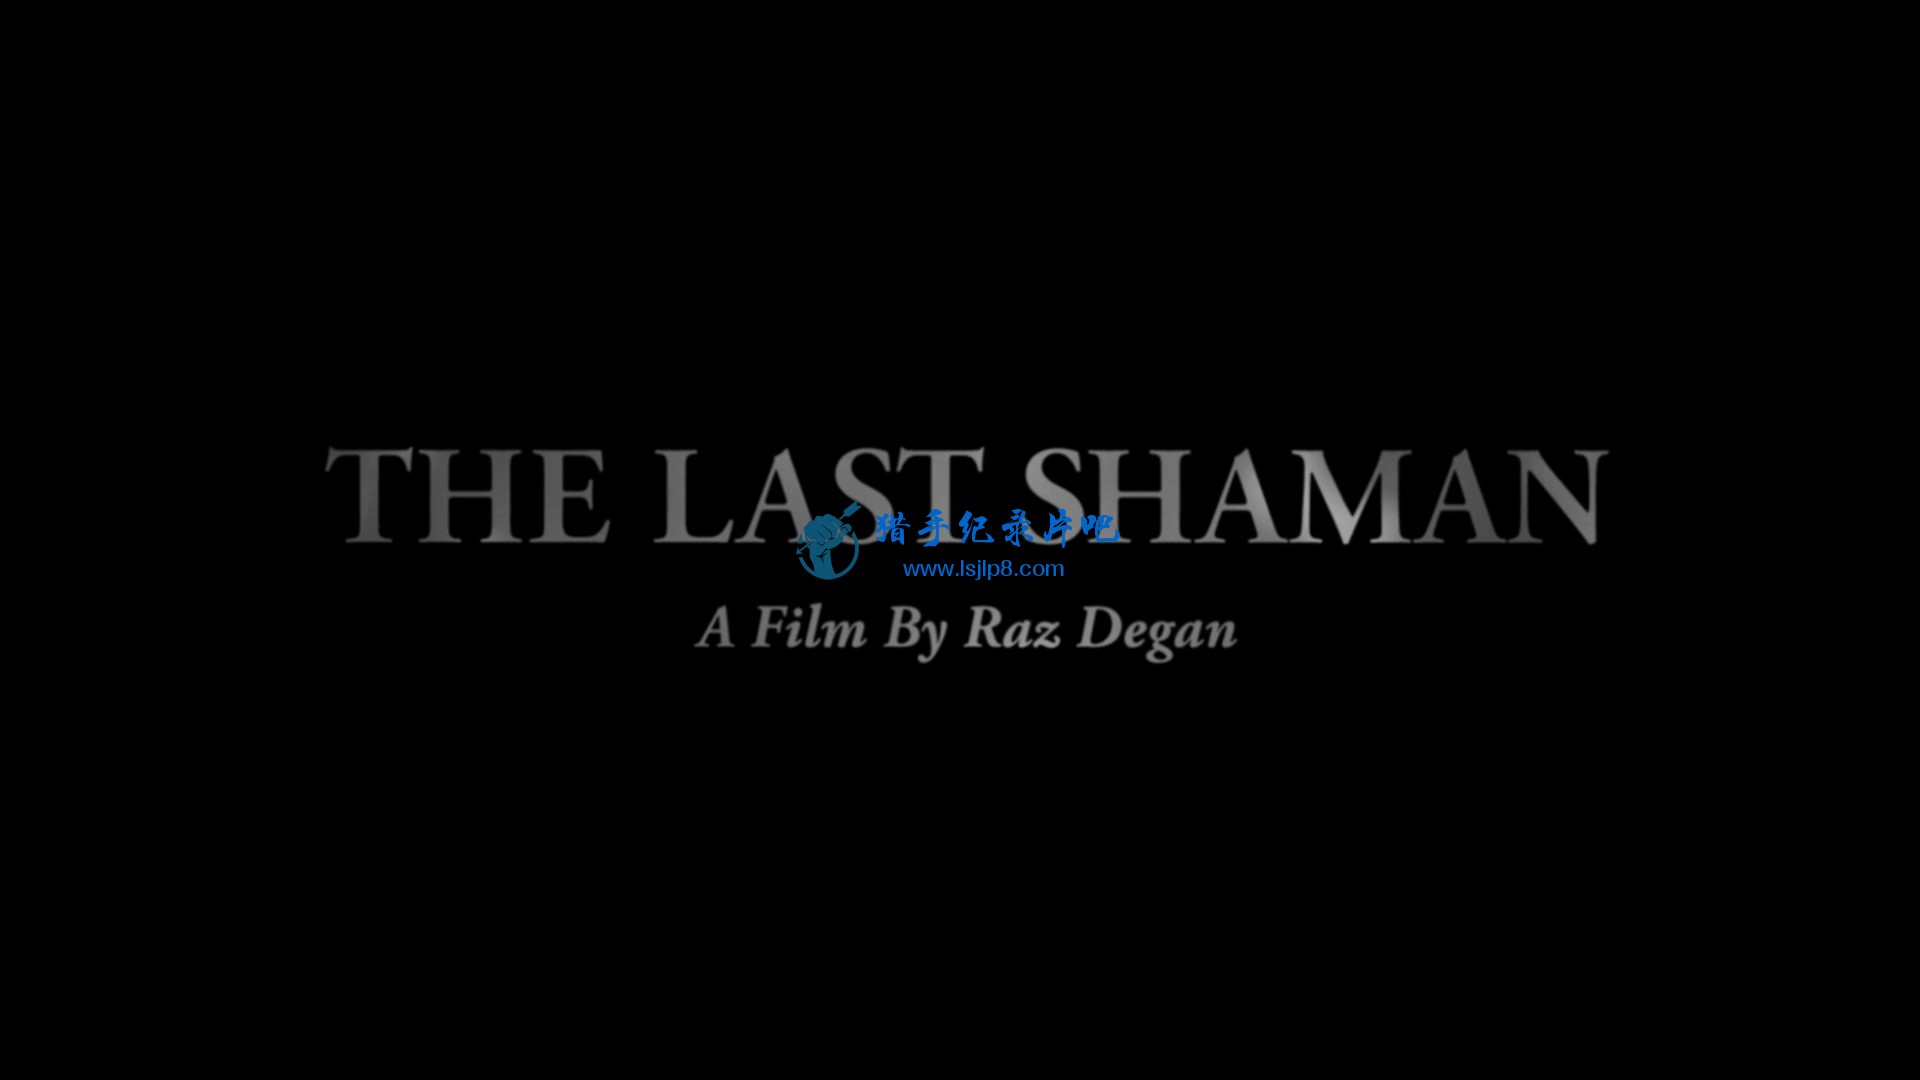 The.Last.Shaman.2016.1080p.NF.WEB-DL.DD5.1.x264-AJP69.mkv_20200531_102123.276.jpg